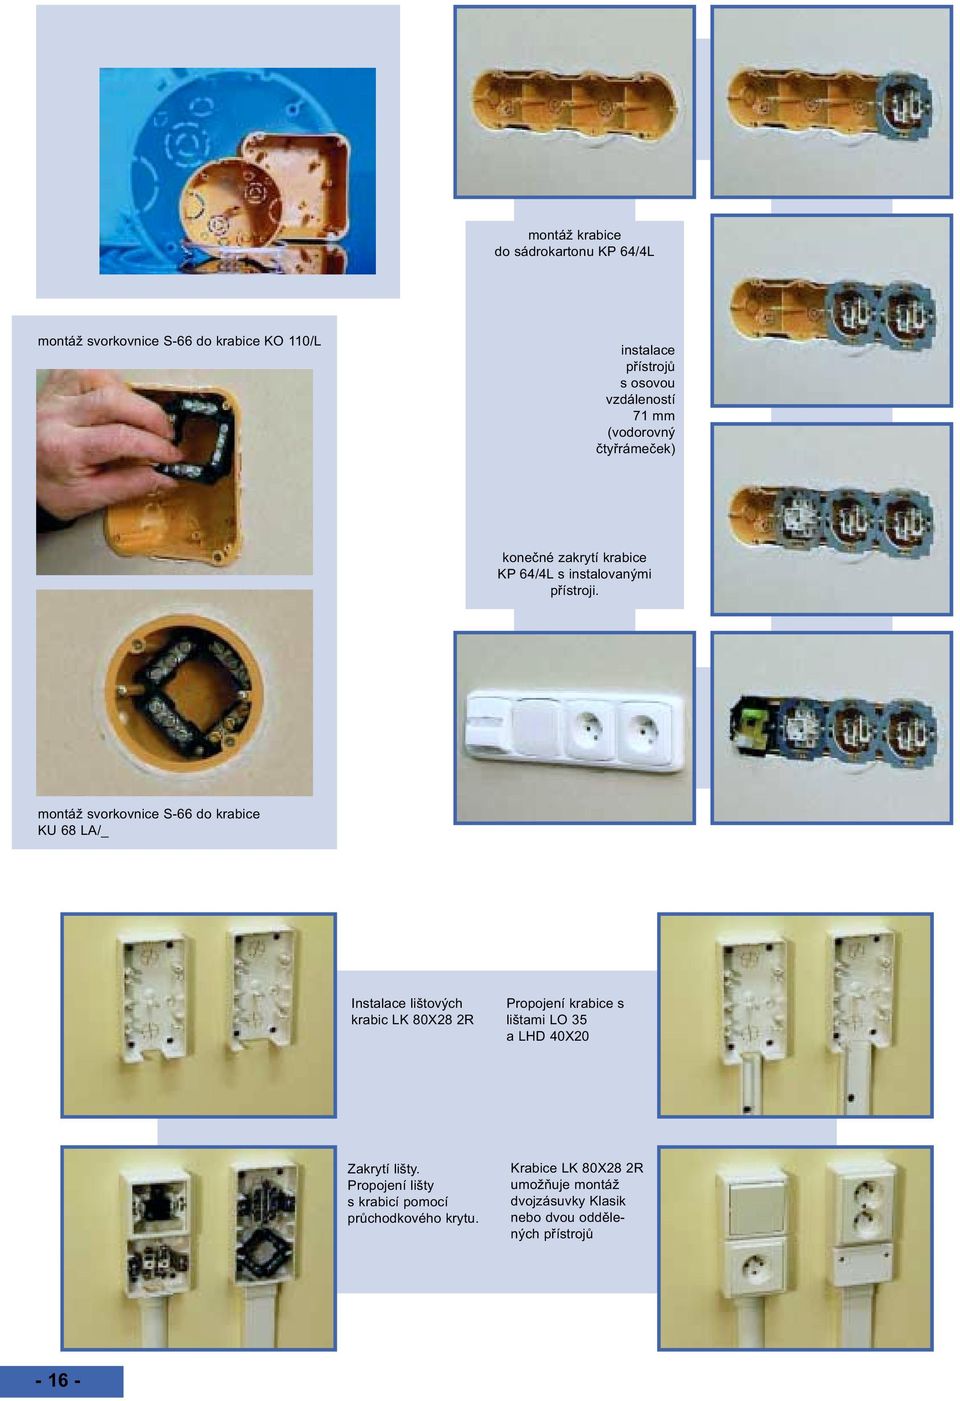 Elektroinstalační krabice a příslušenství - PDF Free Download